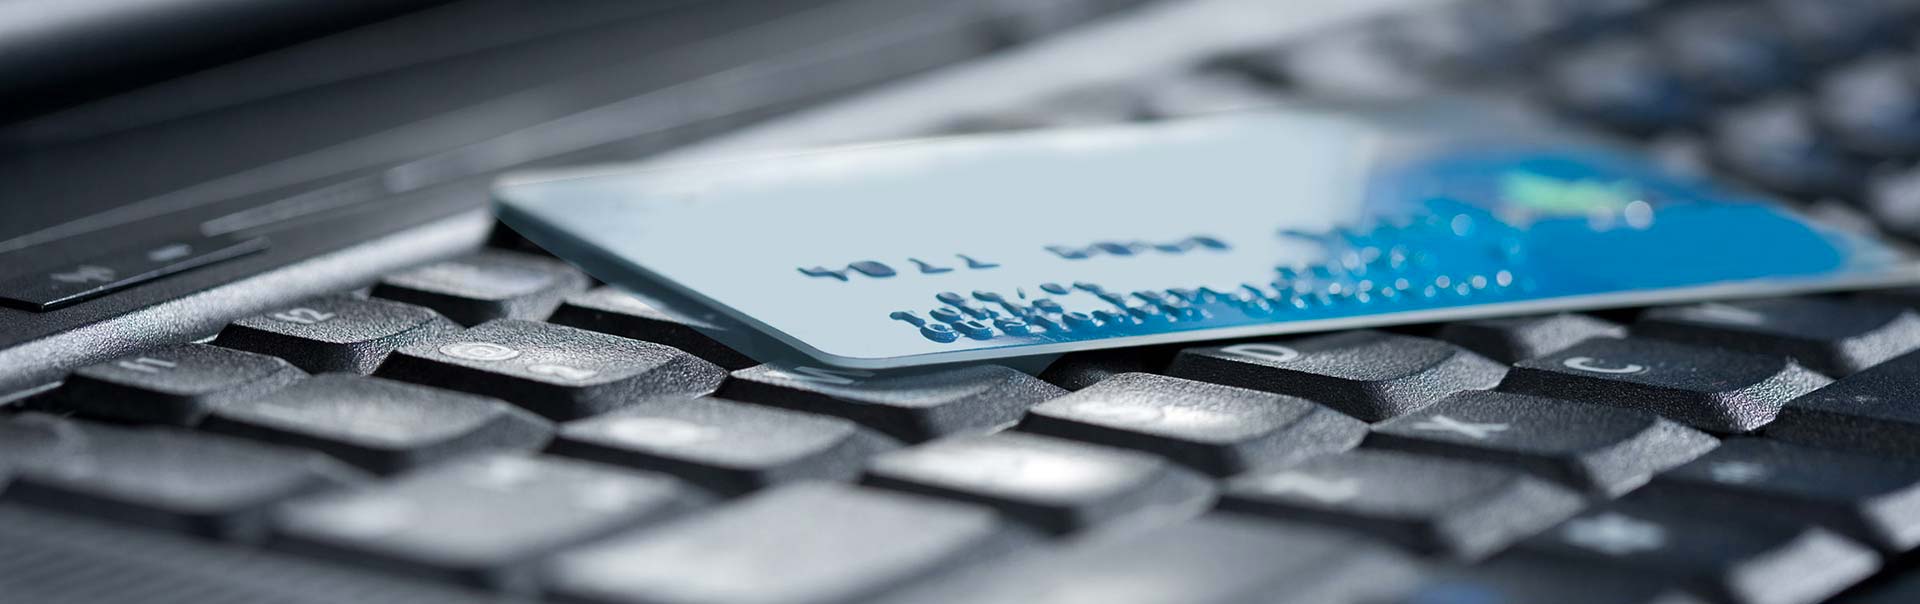 L'eCommerce o commercio elettronico o commercio su Internet richiede spesso transazioni economiche con carta di credito